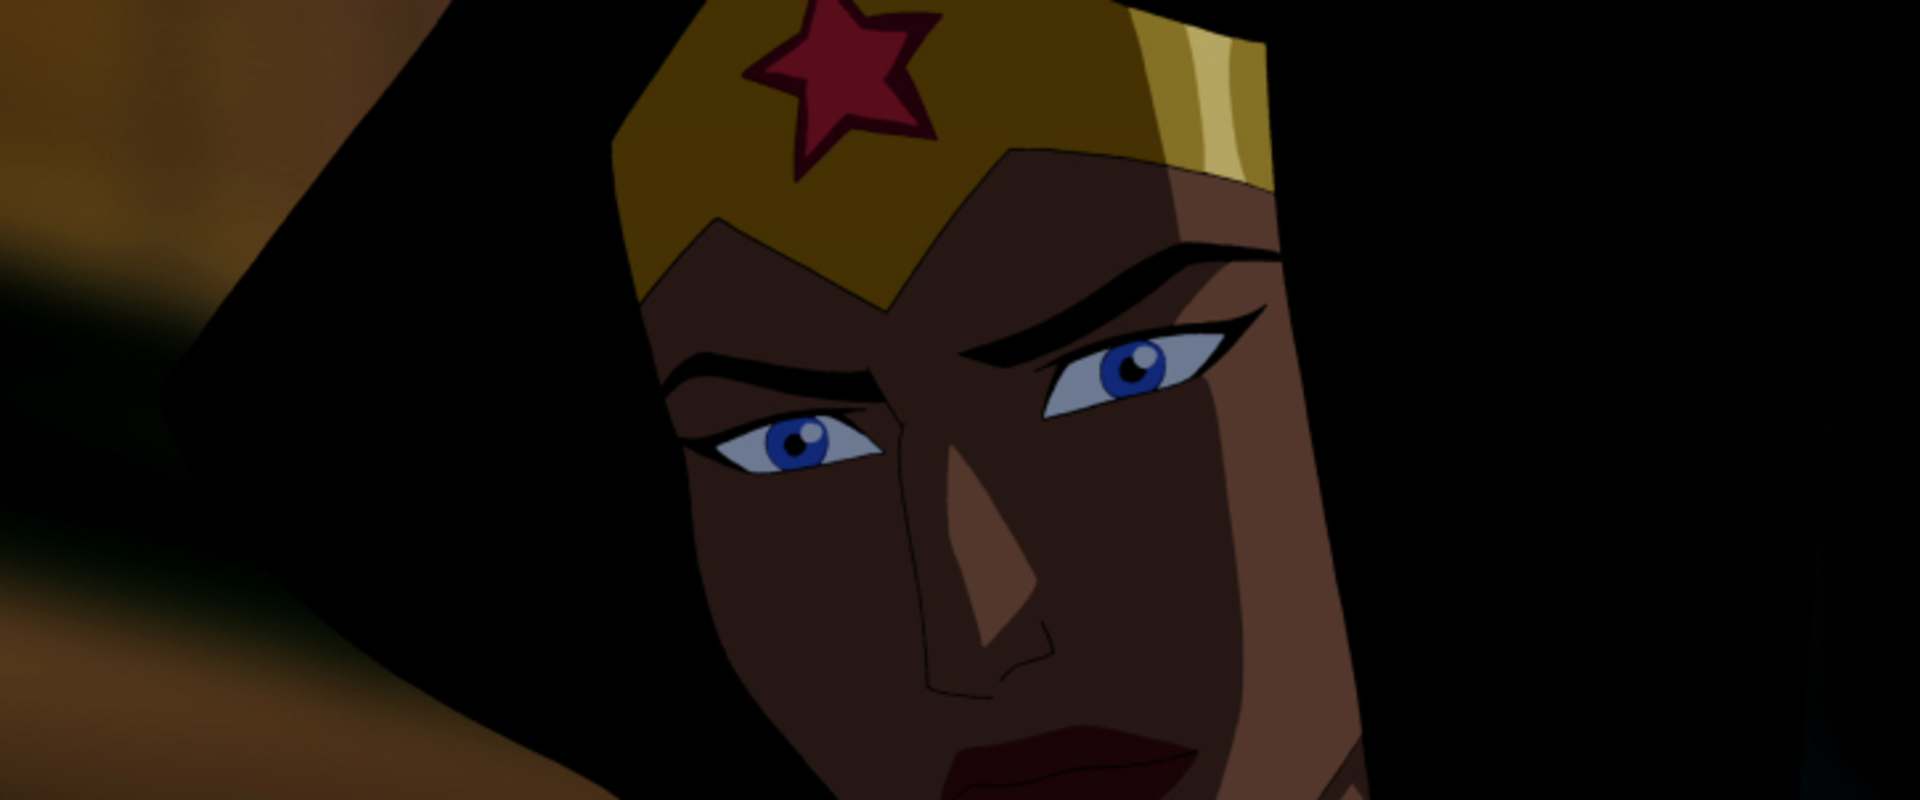 Wonder Woman background 2